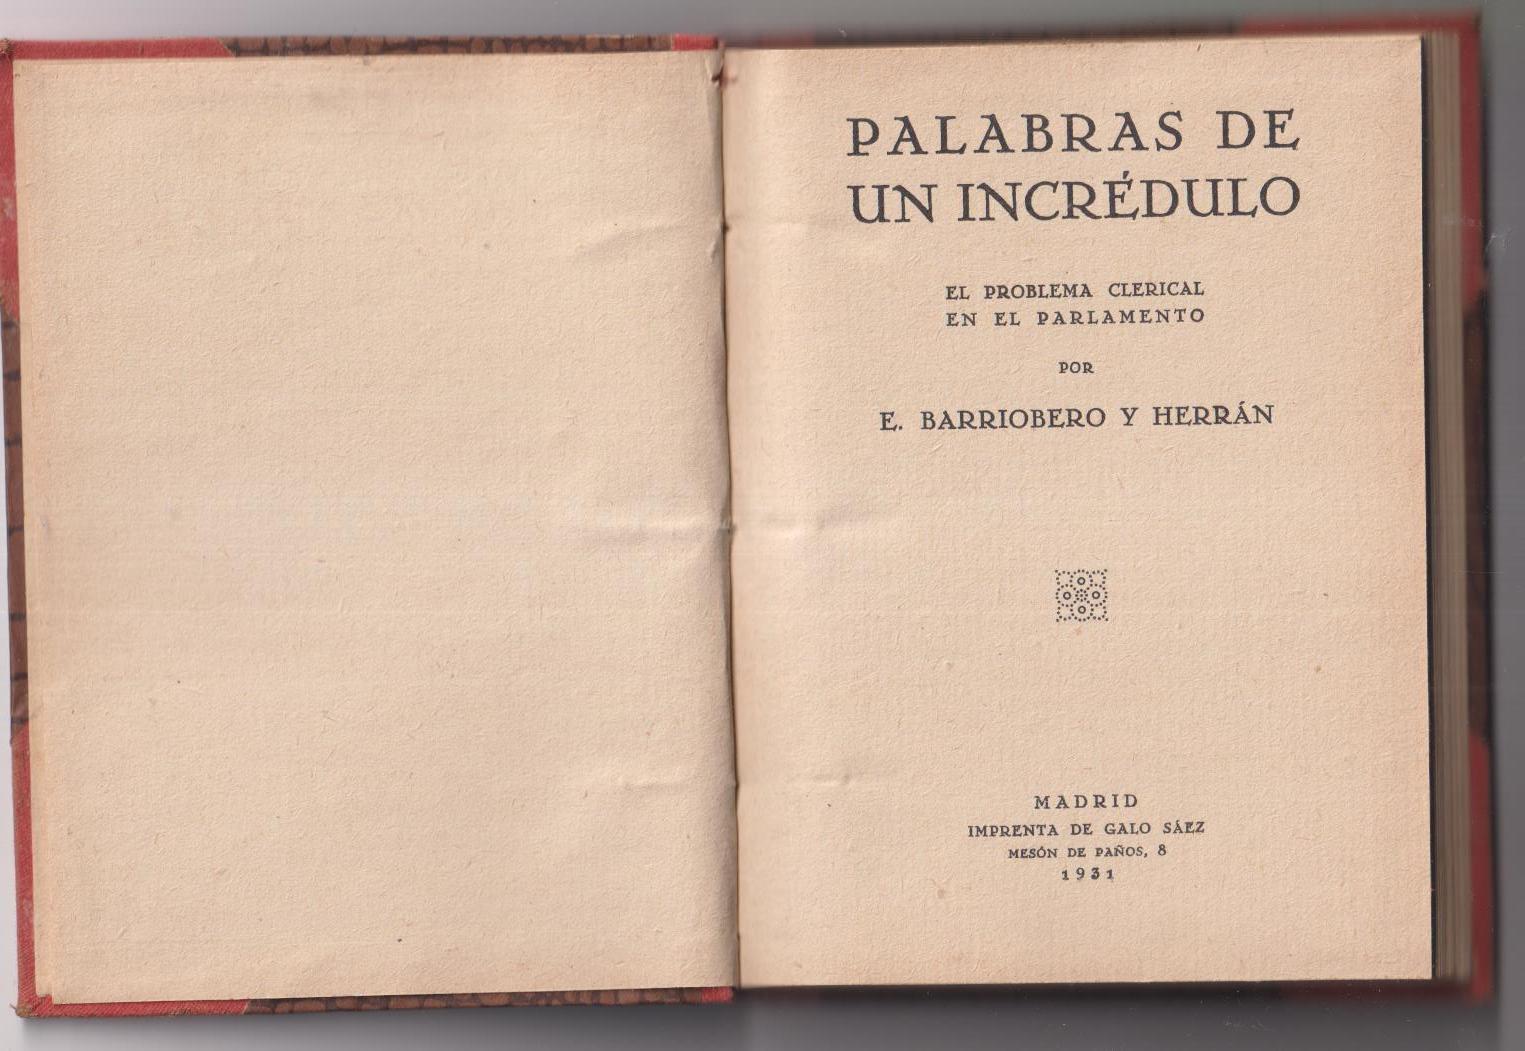 E. Barriobero y Herrán. Palabras de un incrédulo. El Problema Clerical en Parlamento. 1931.